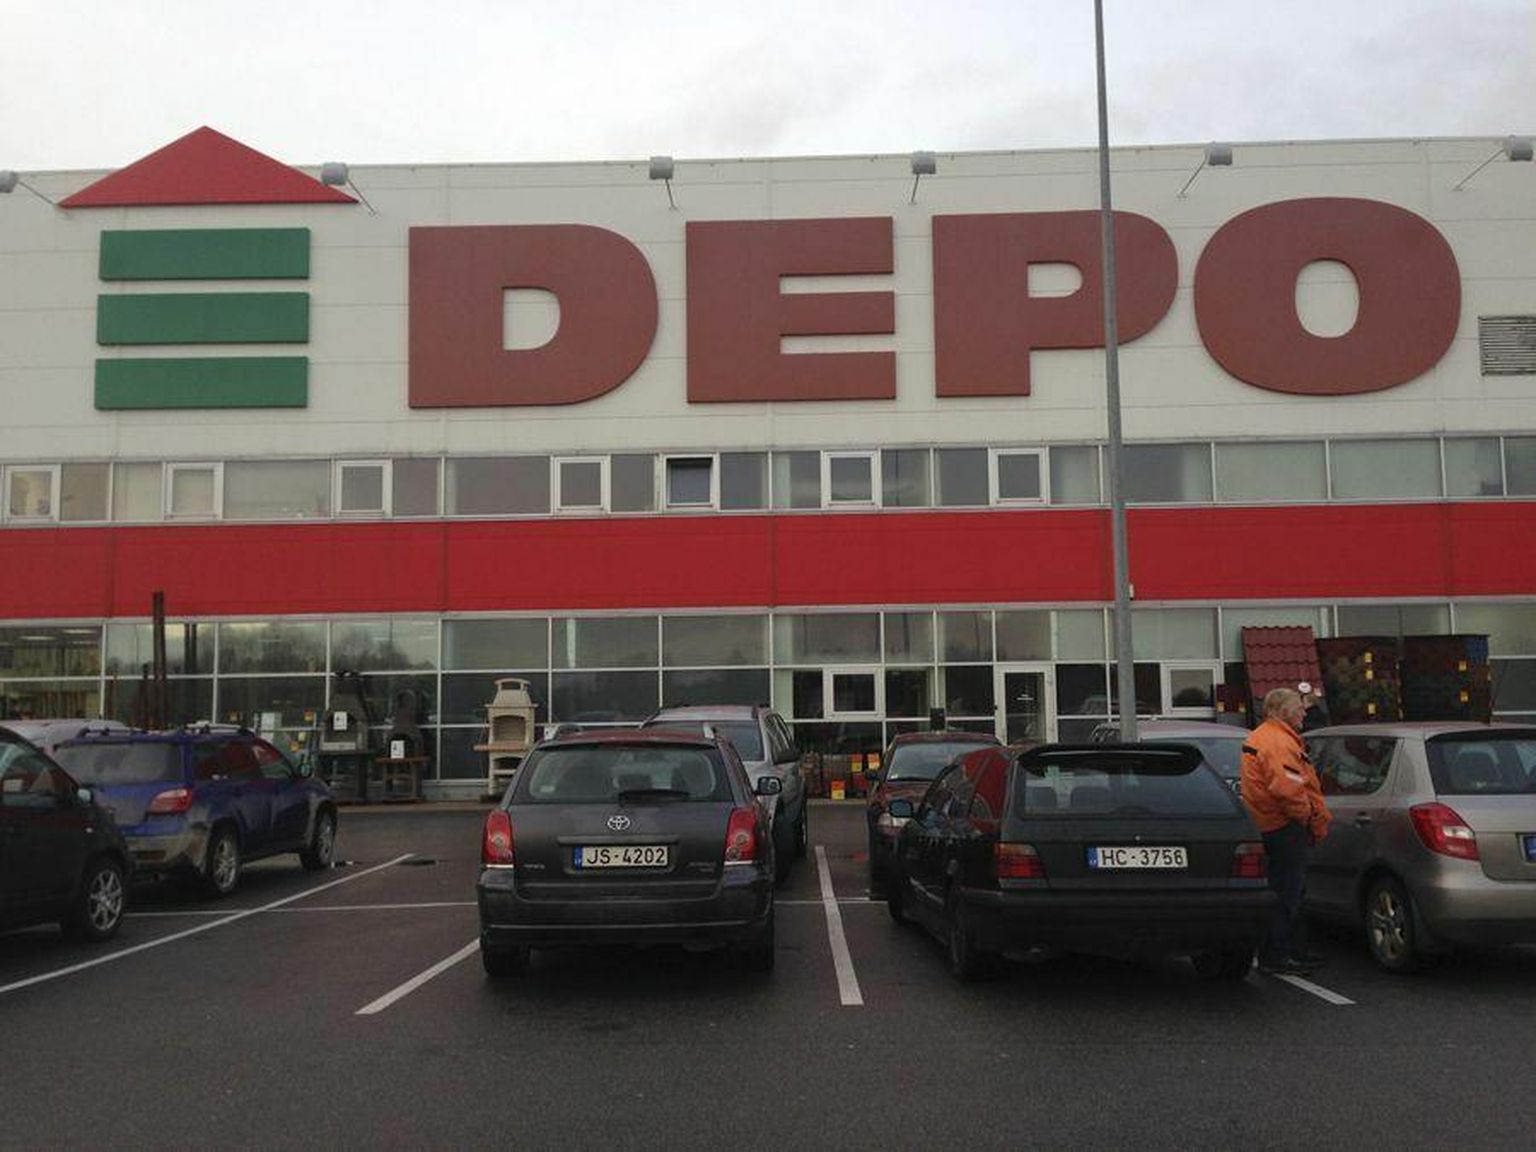 Läti kauplusekett Depo on eestlastele tuttav eelkõige ehitusmaterjalide suure valiku poolest. Ka valgamaalsed käivad seal ehitusmaterjali ostmas.